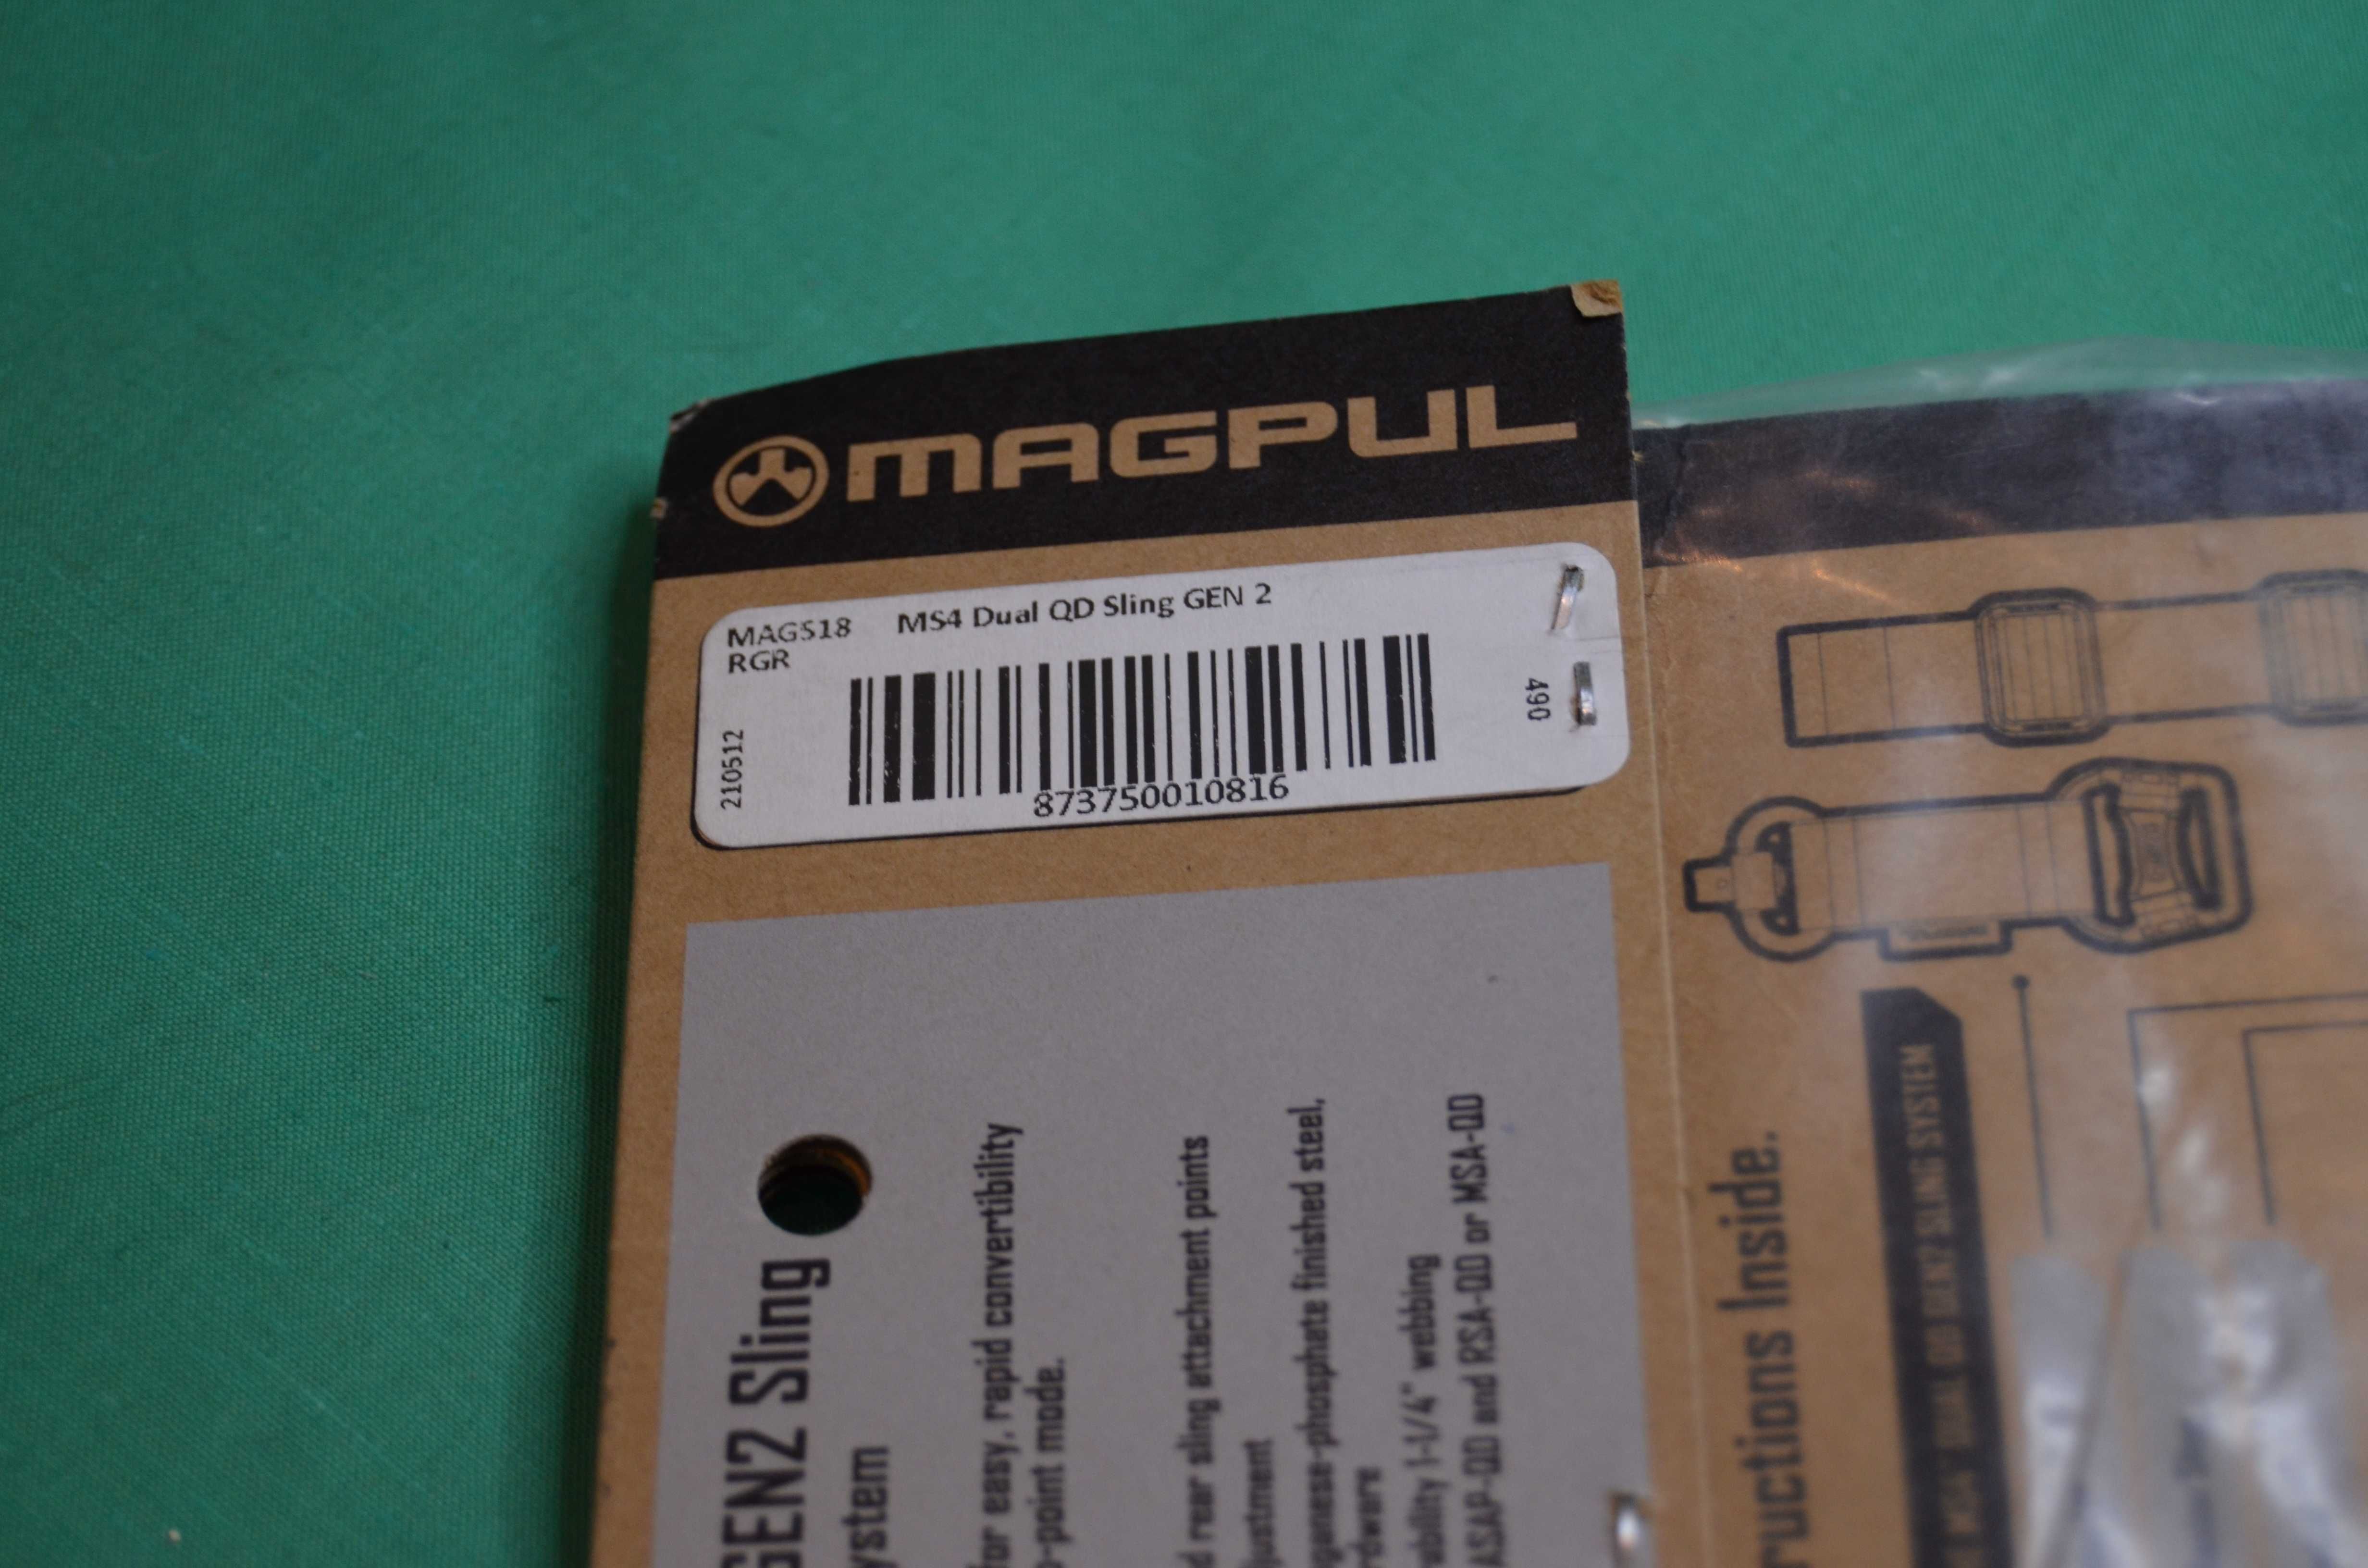 Ремень с антабками Magpul MS4 Dual QD GEN2 MAG518 Оригинал